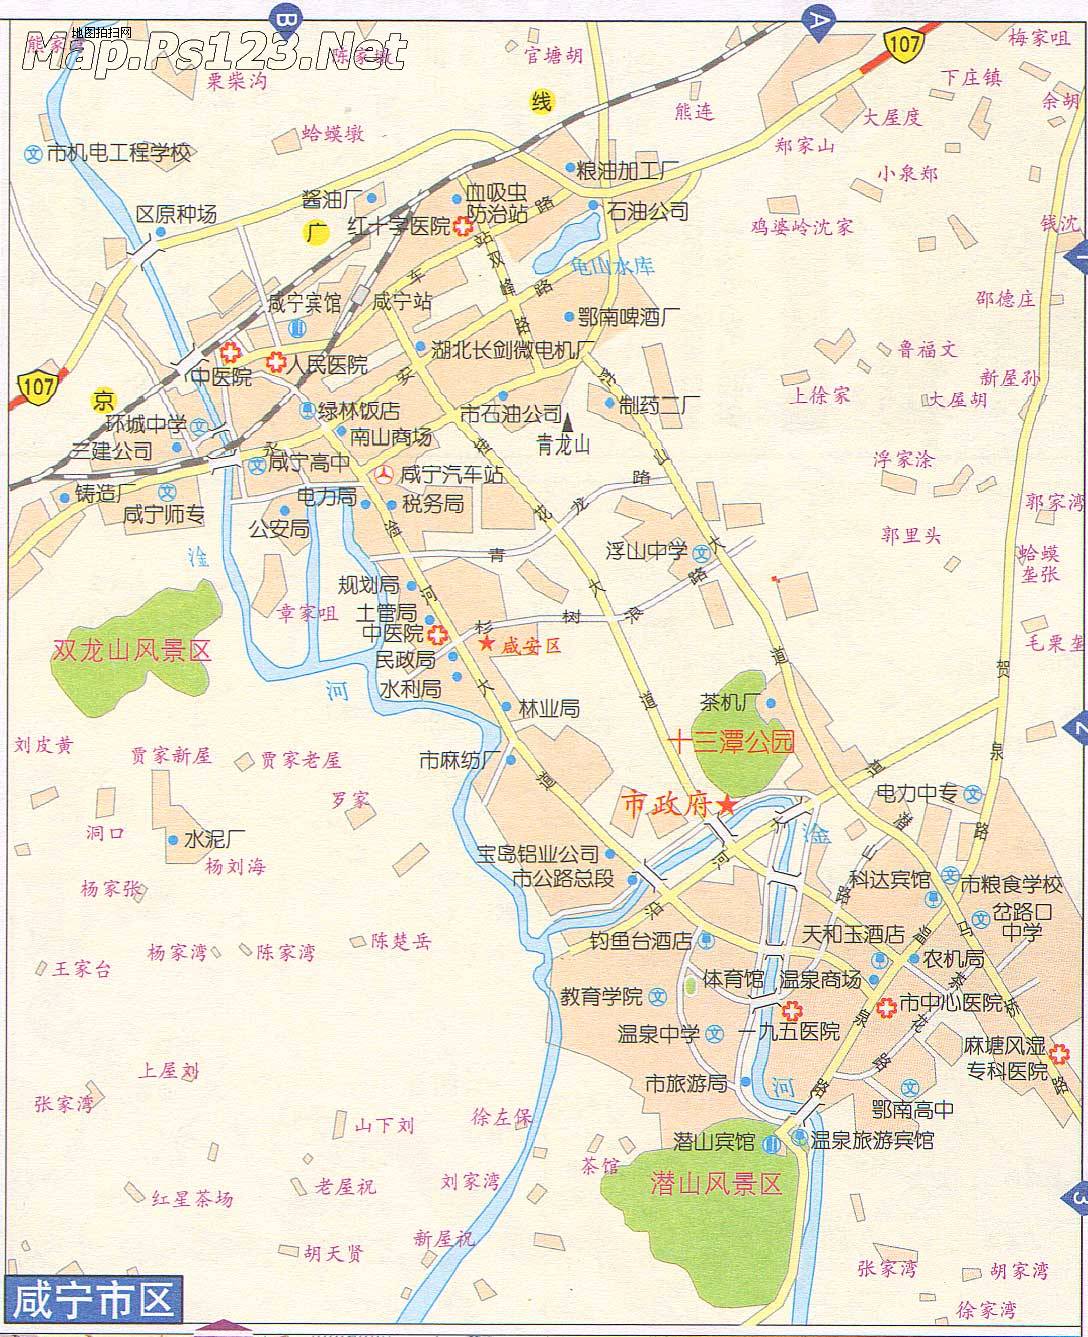 地图 湖北 咸宁市  咸宁市区地图  相关: 武汉市  恩施州